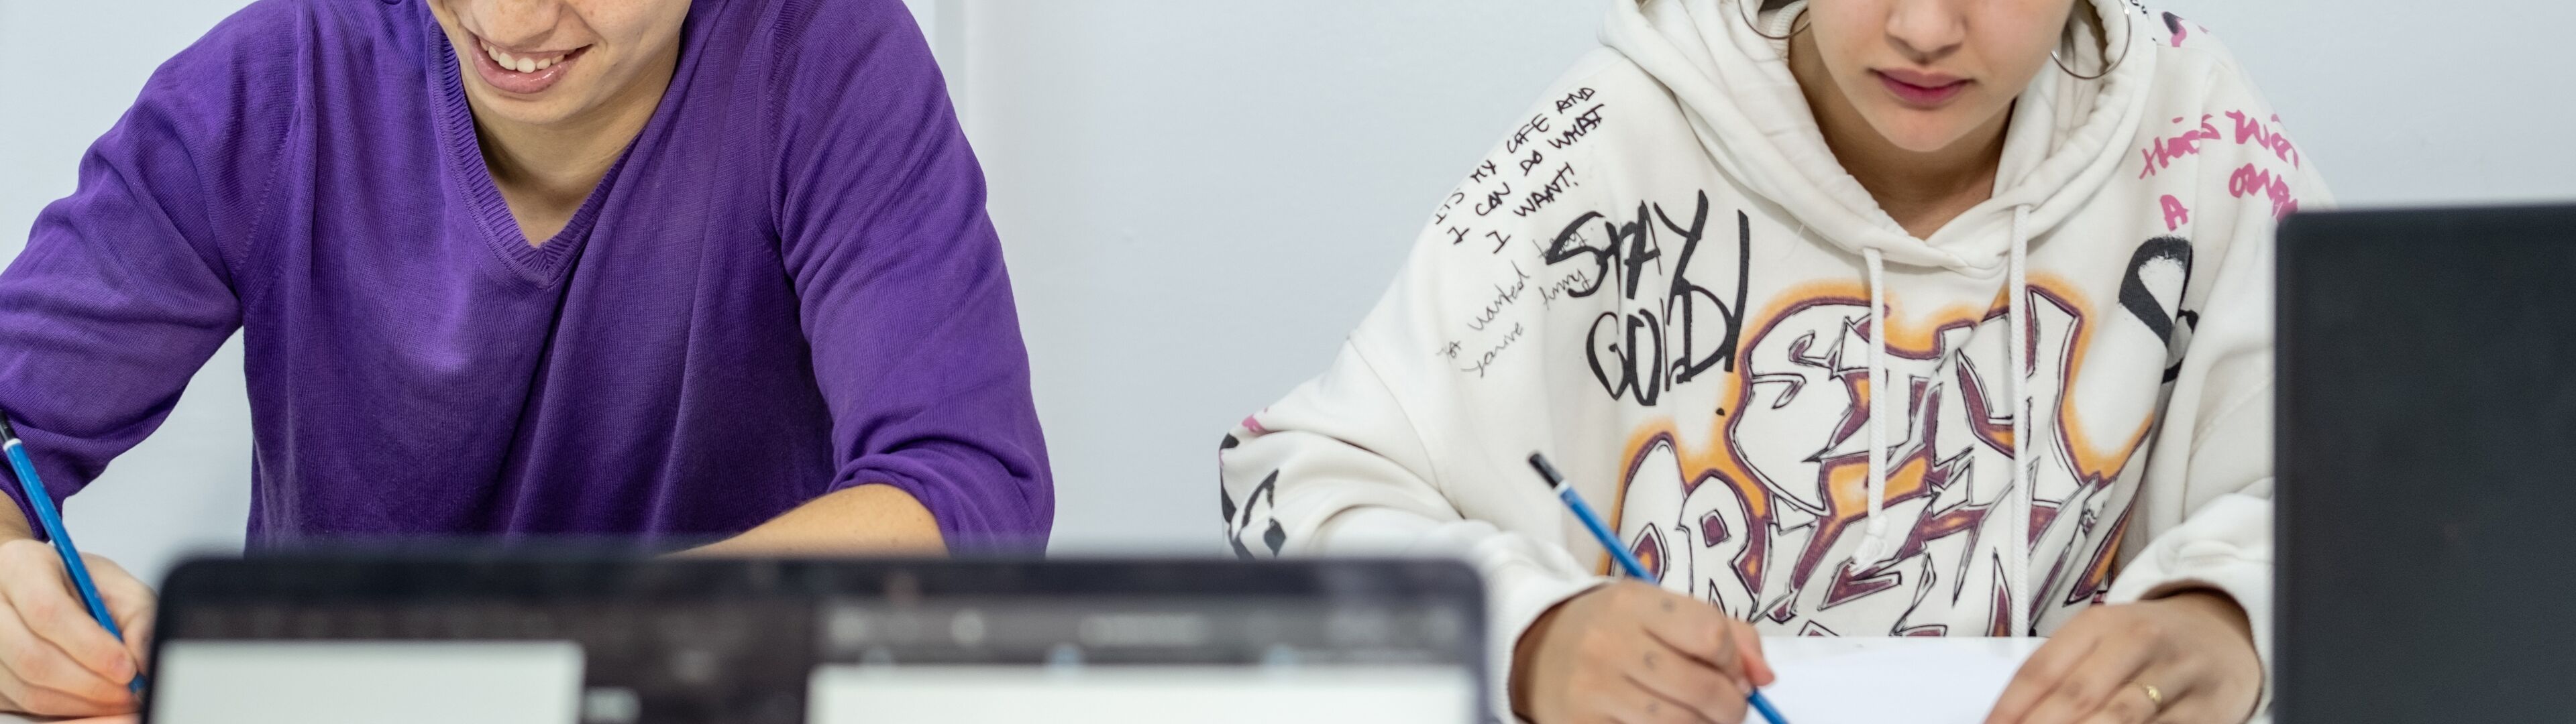 Un garçon et une fille, probablement adolescents, étudient à un bureau encombré de papiers et d'ordinateurs portables, concentrés sur leur travail dans une pièce décorée de posters.

